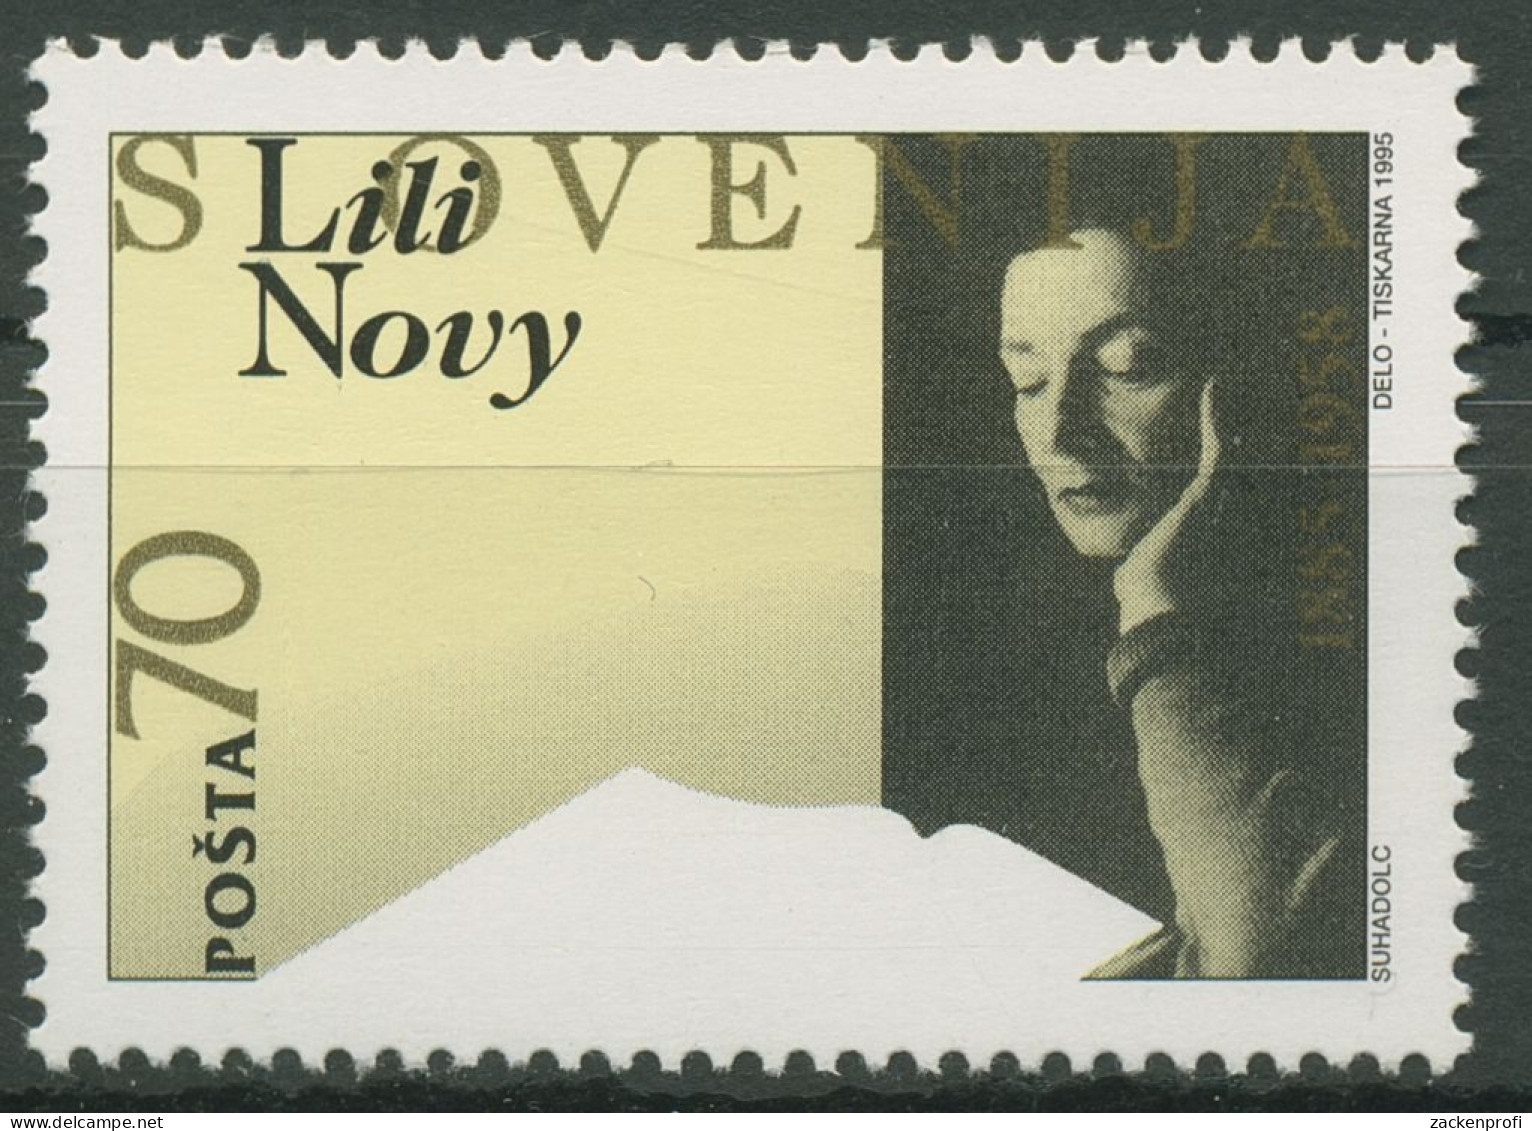 Slowenien 1995 Dichterin Lili Novy 105 Postfrisch - Slovenia